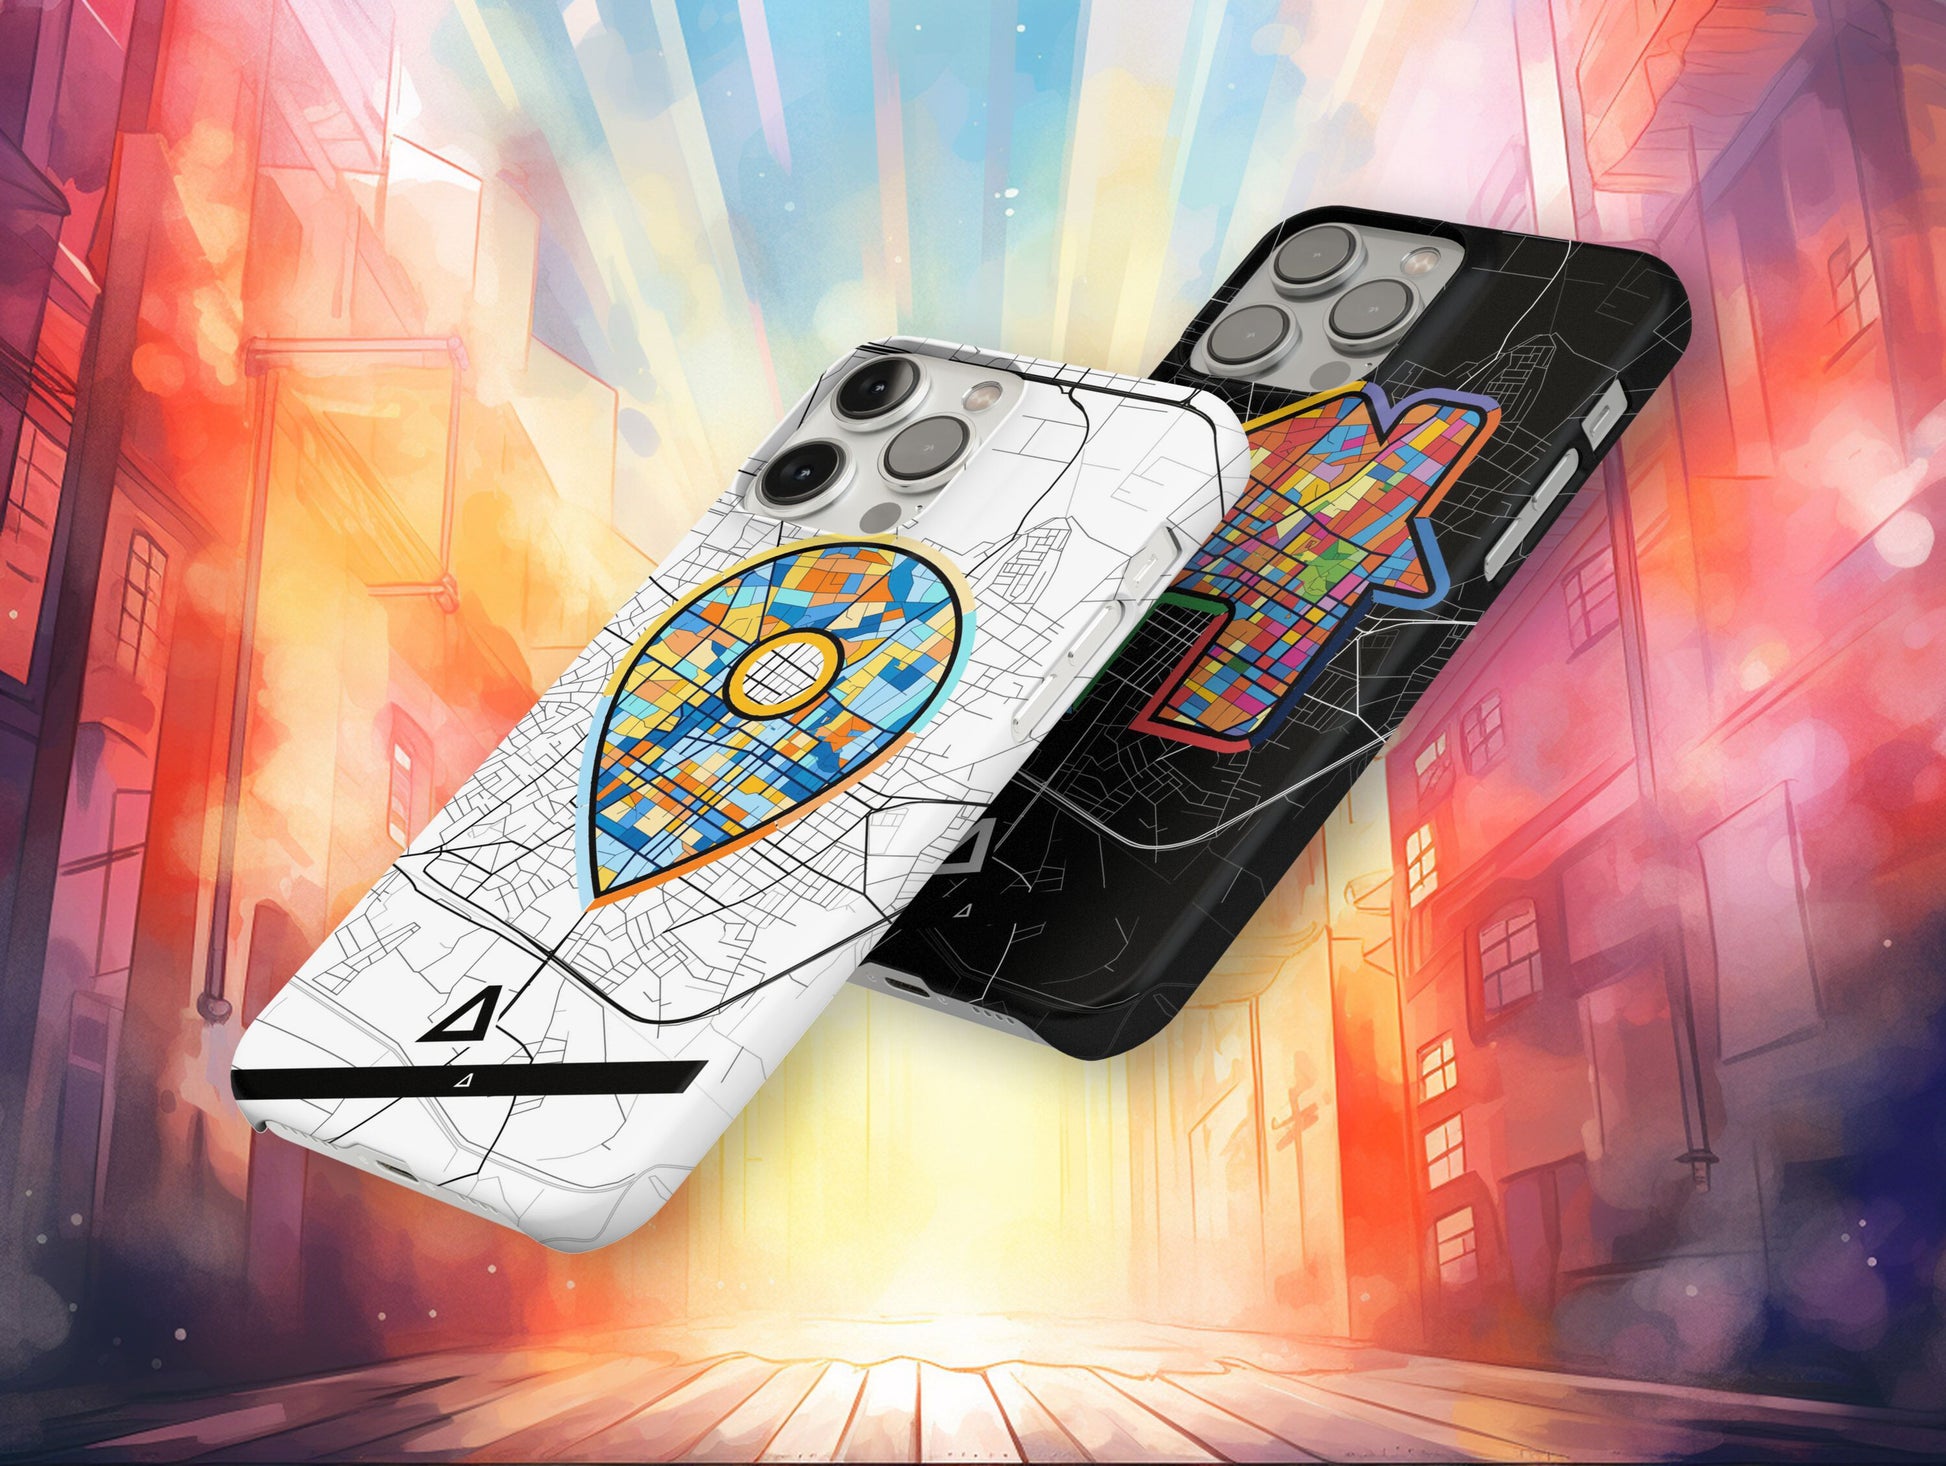 Καρδιτσα Ελλαδα slim phone case with colorful icon